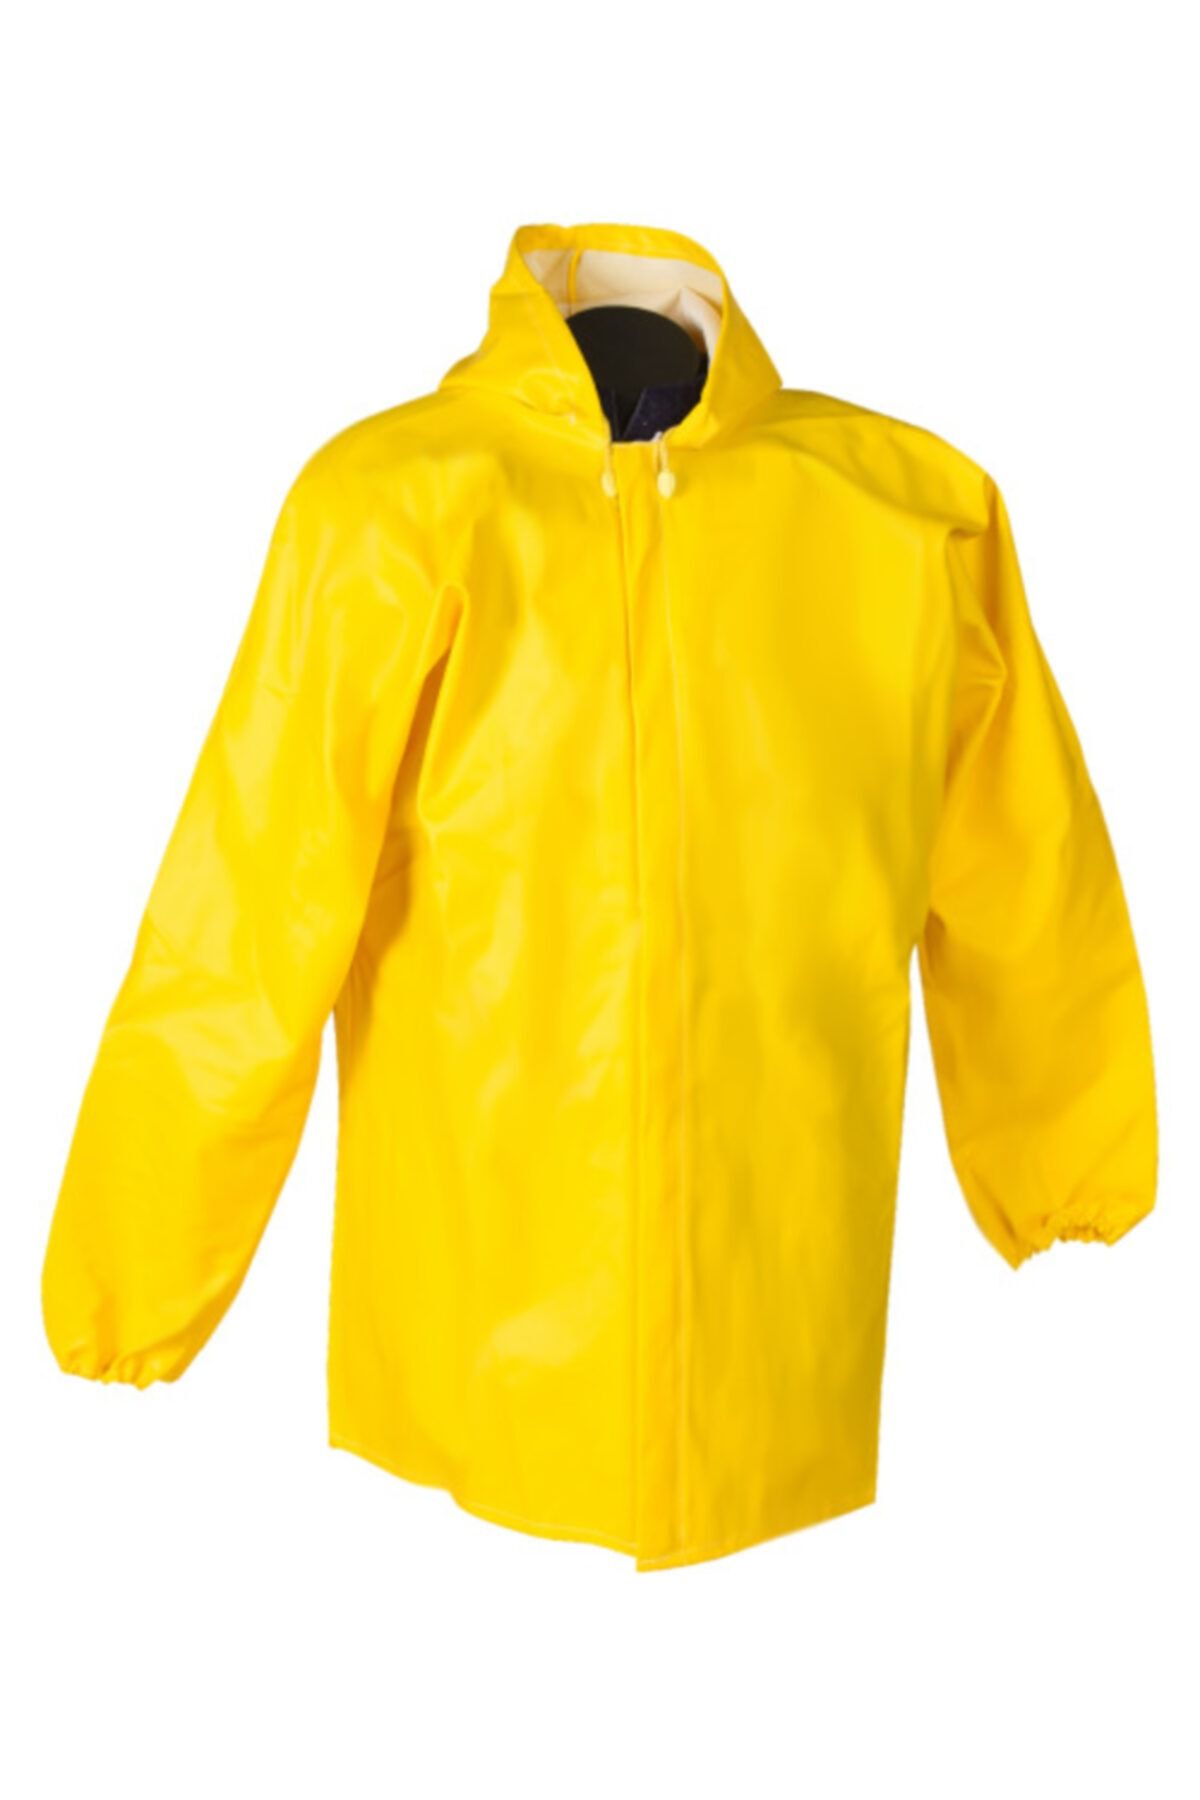 T Rain Erkek Sarı Fermuarlı Ceket Tipi Yağmurluk